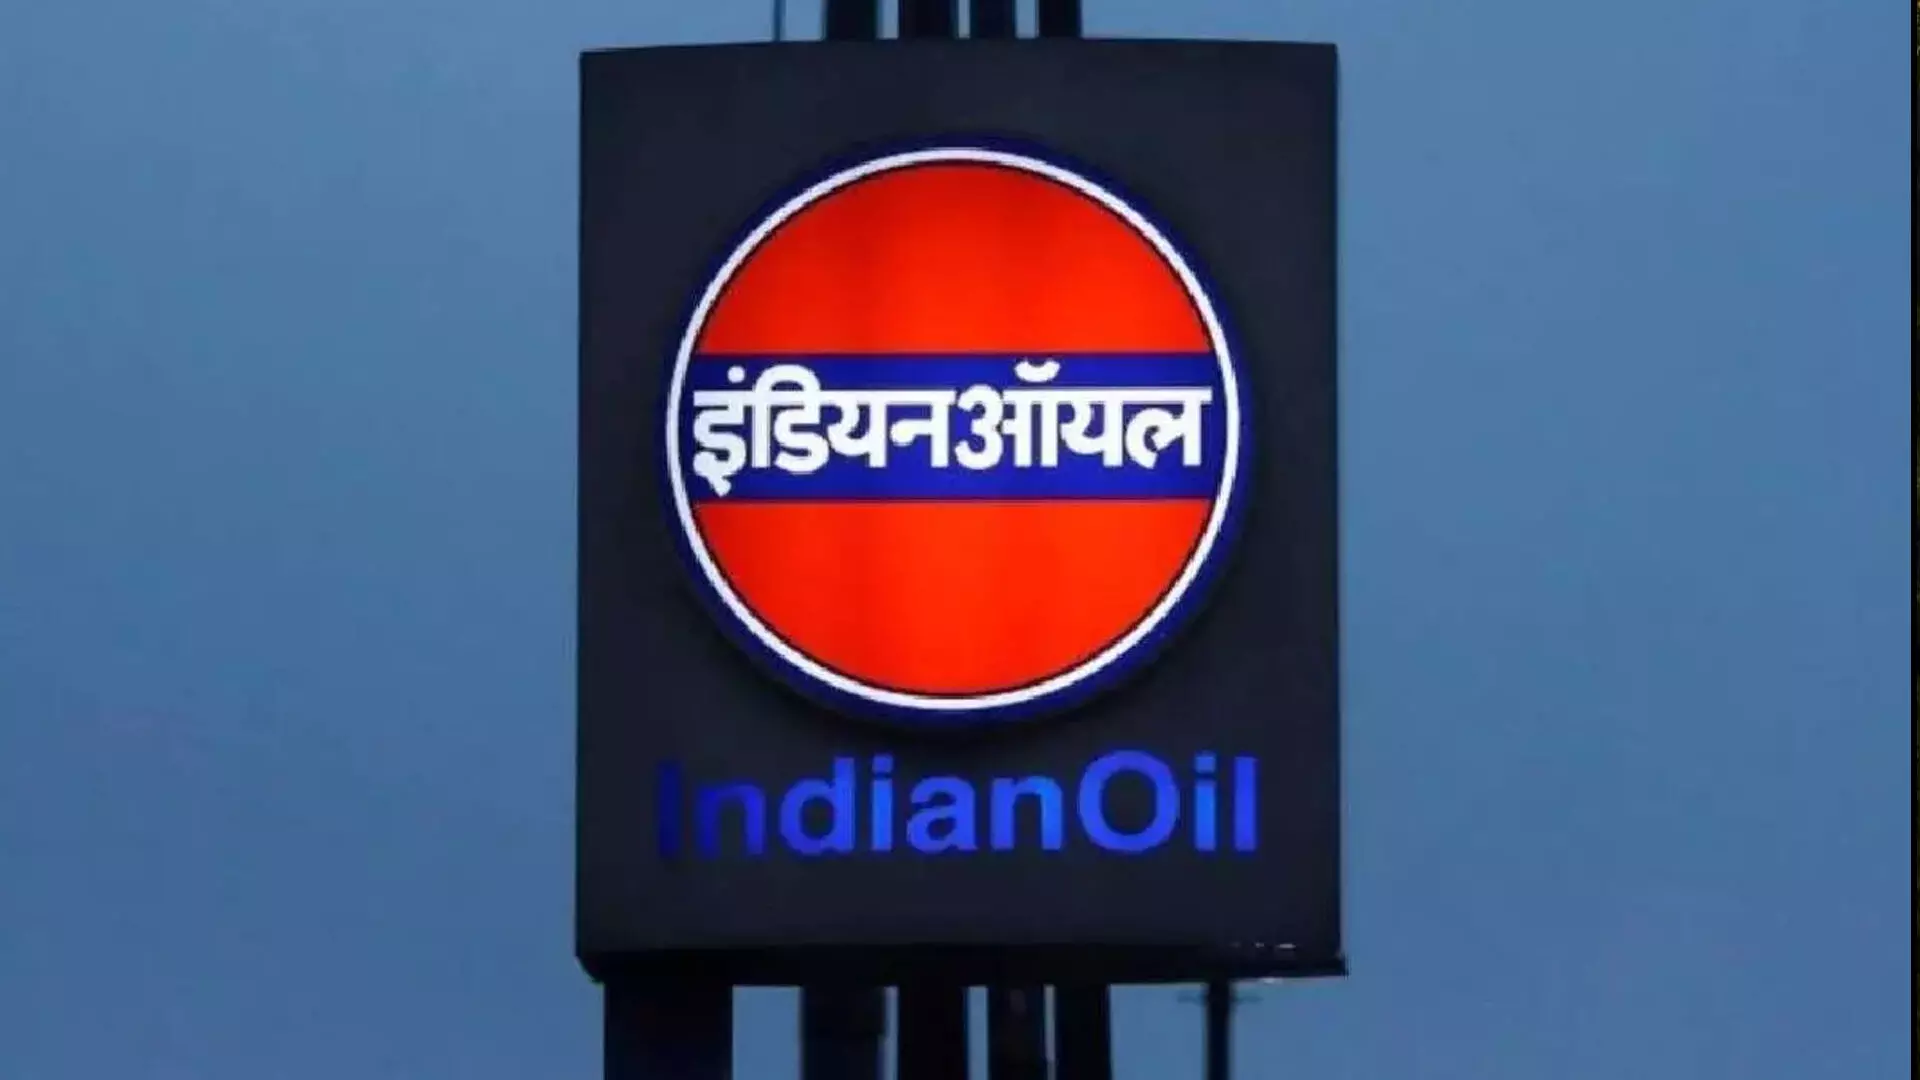 कच्चे तेल की लागत में तेज वृद्धि, इंडियन ऑयल के शुद्ध लाभ में 52 प्रतिशत की गिरावट